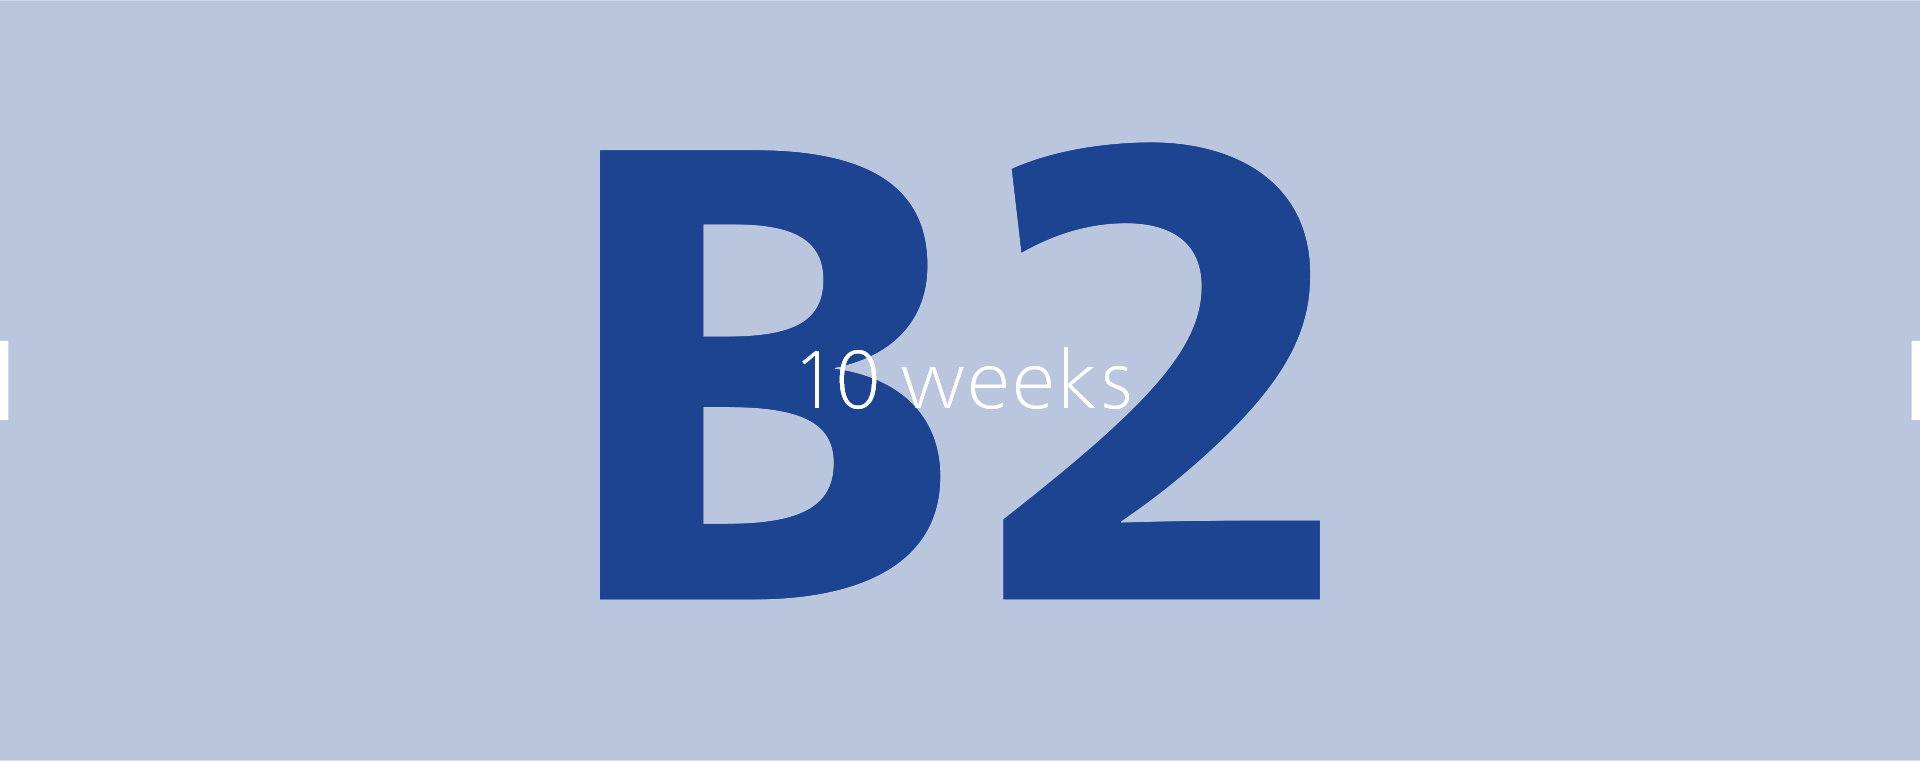 B2: 10 weeks